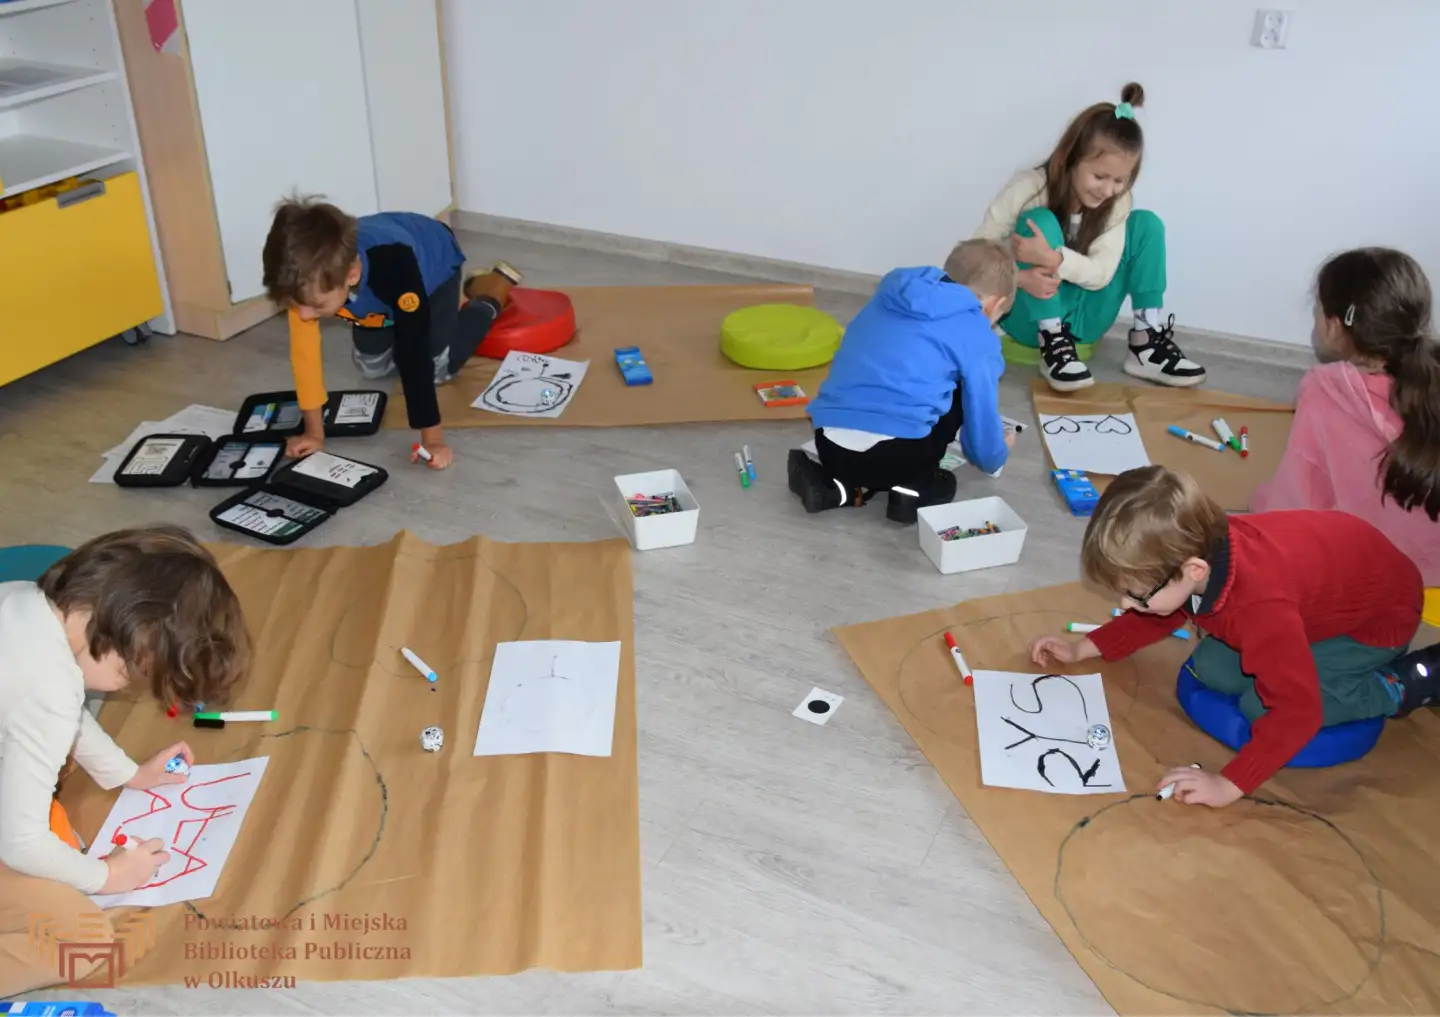 Grupa dzieci siedzi na podłodze i rysuje kształty na białych kartkach. Dorosła kobieta im pomaga. Część dzieci korzysta z małych robotów ozobotów.